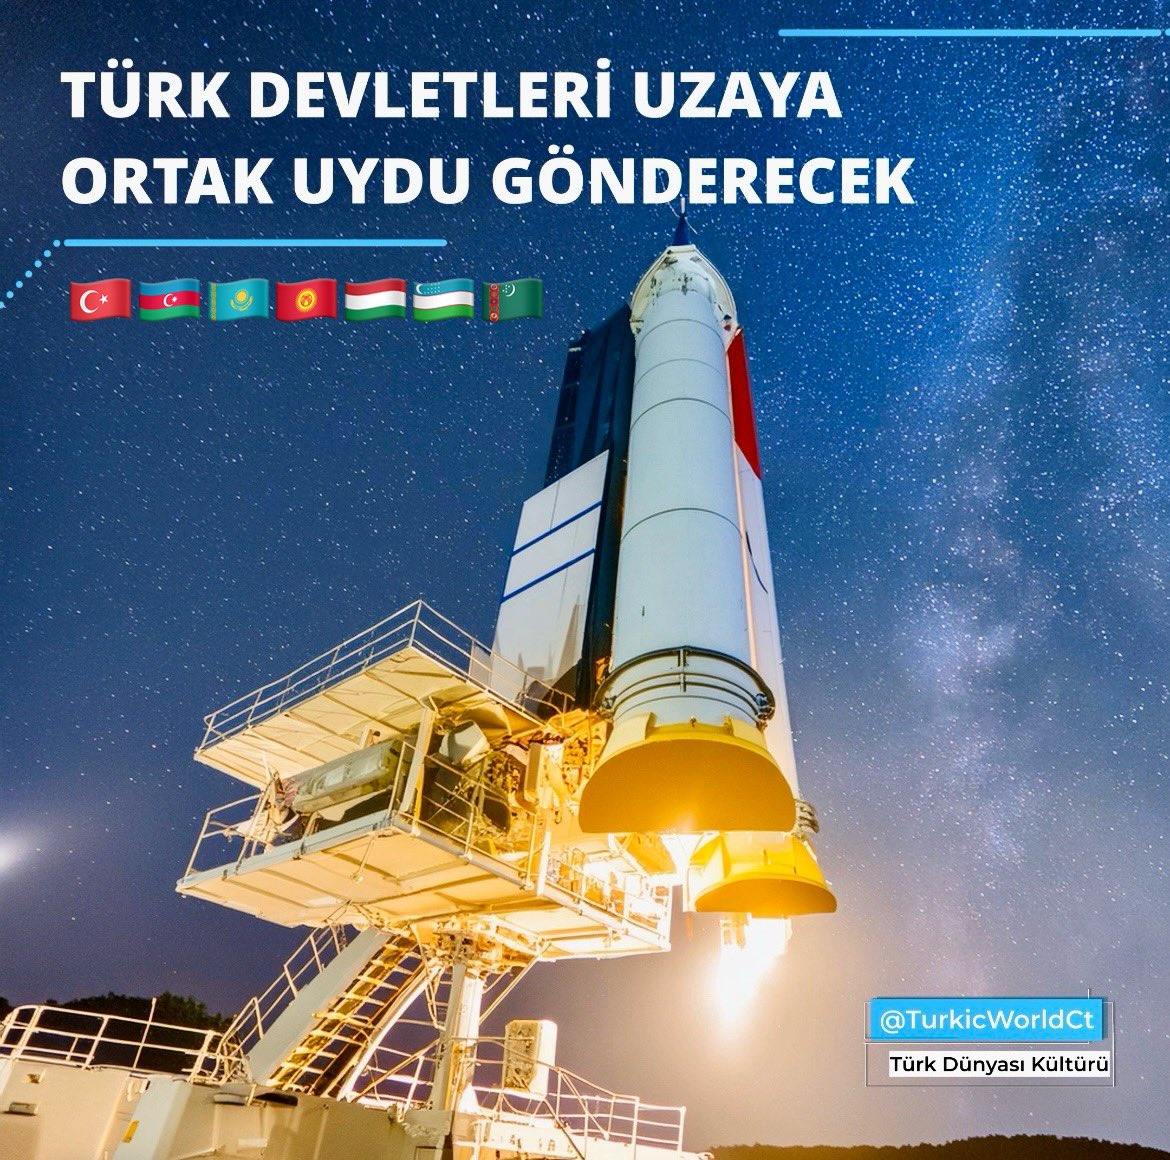 Türk Devletleri Uzaya Ortak Uydu Gönderecek Ankara’da gerçekleştirilen TDT Uzay Ajansları Toplantısı’nda ortak uydu üzerinde çalışacak özel bir ekibin oluşturulması konusunda mutabakata varıldı. Ekibin Kazakistan’daki araştırma merkezinde faaliyetlerini sürdüreceği belirtildi.